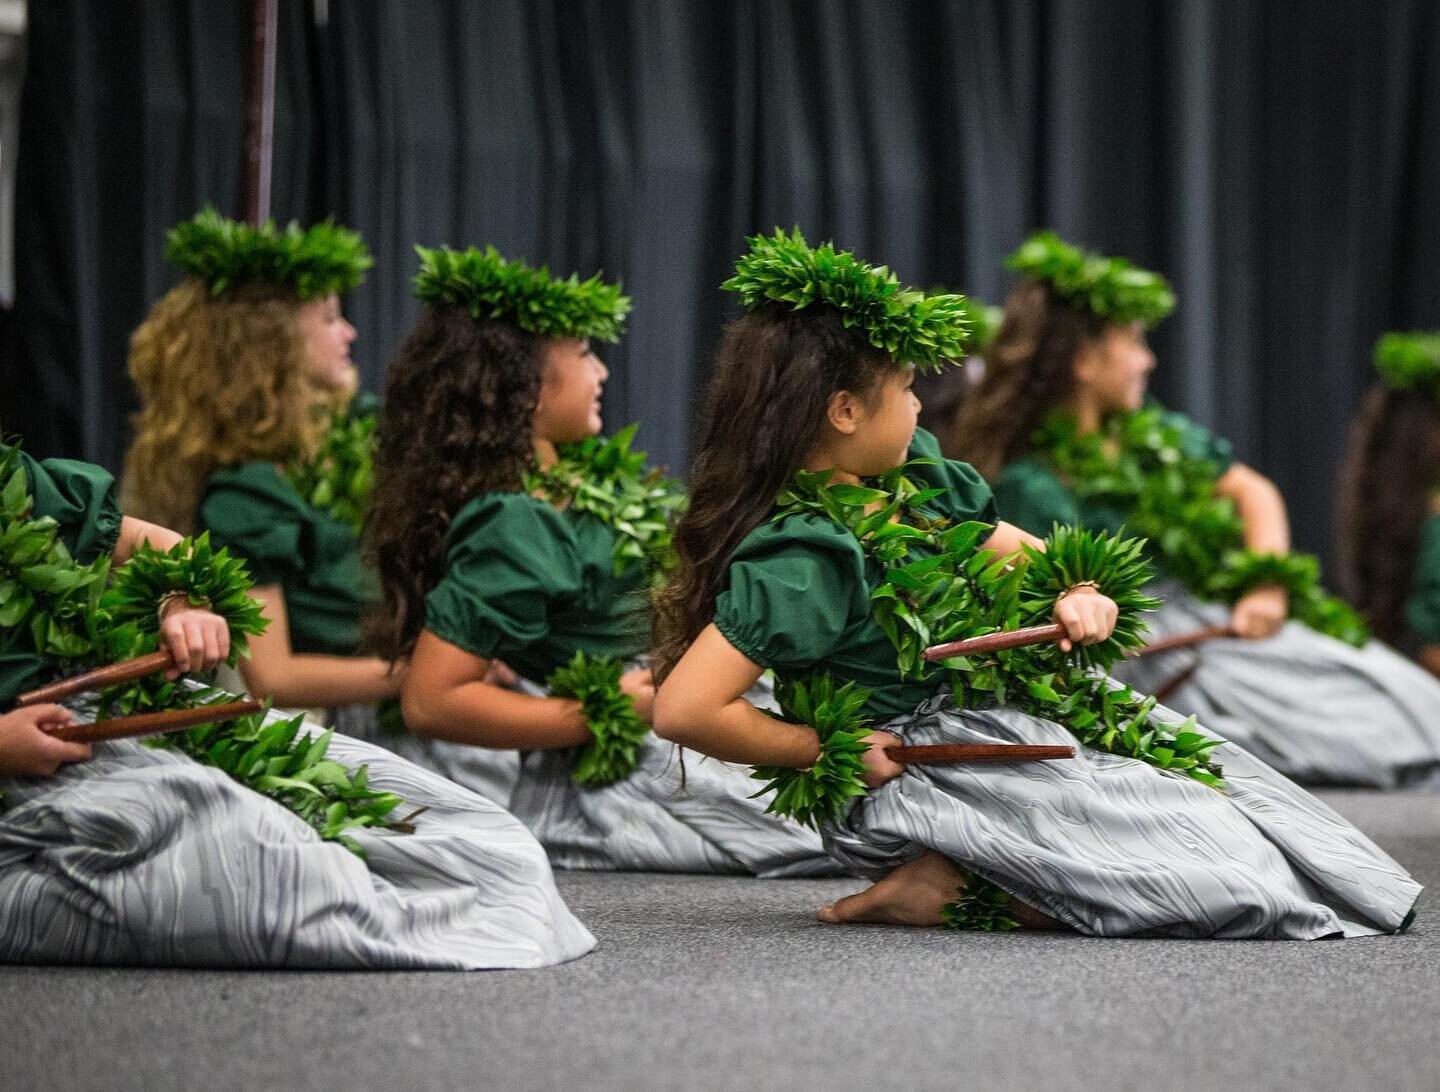 &ldquo;He keiki aloha nā mea kanu&rdquo; (Beloved children are the plants.)

- @khoolhula IOEKL 2022 Kaikamahine Kahiko 1st Place